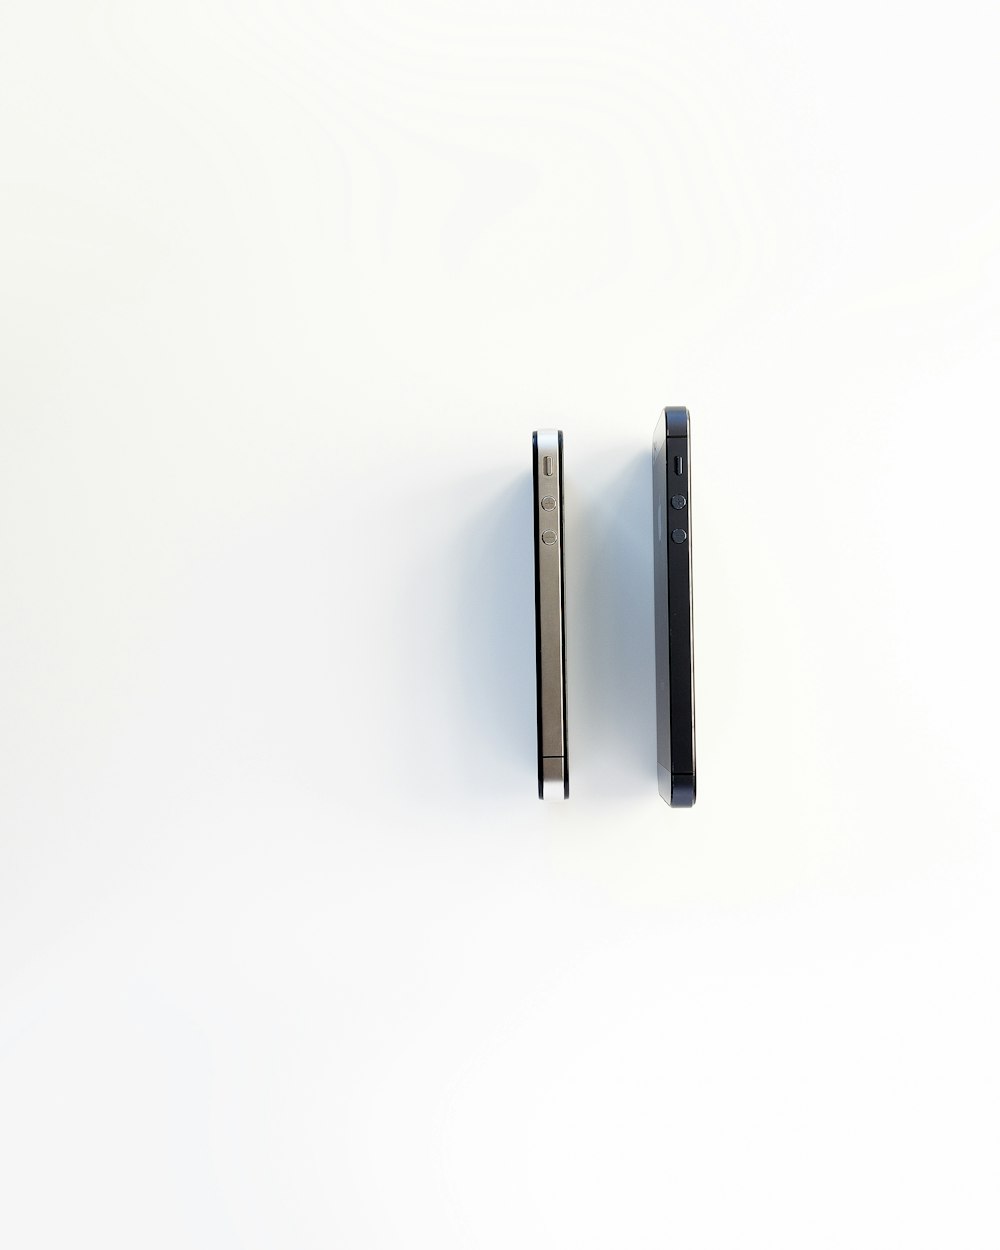 deux iPhone 5s gris sidéral et argent